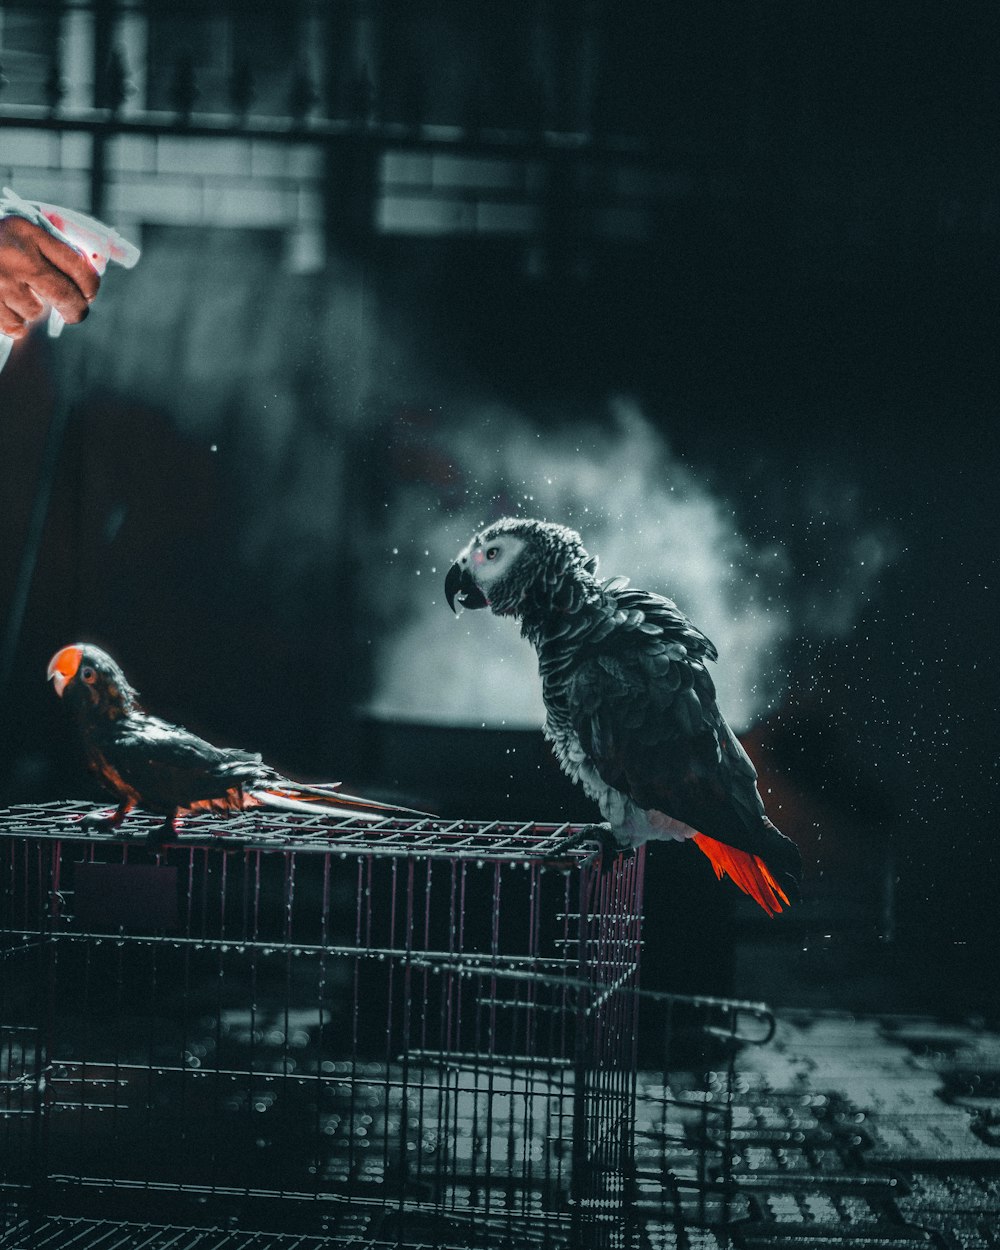 papagaio cinza e branco na gaiola preta do metal